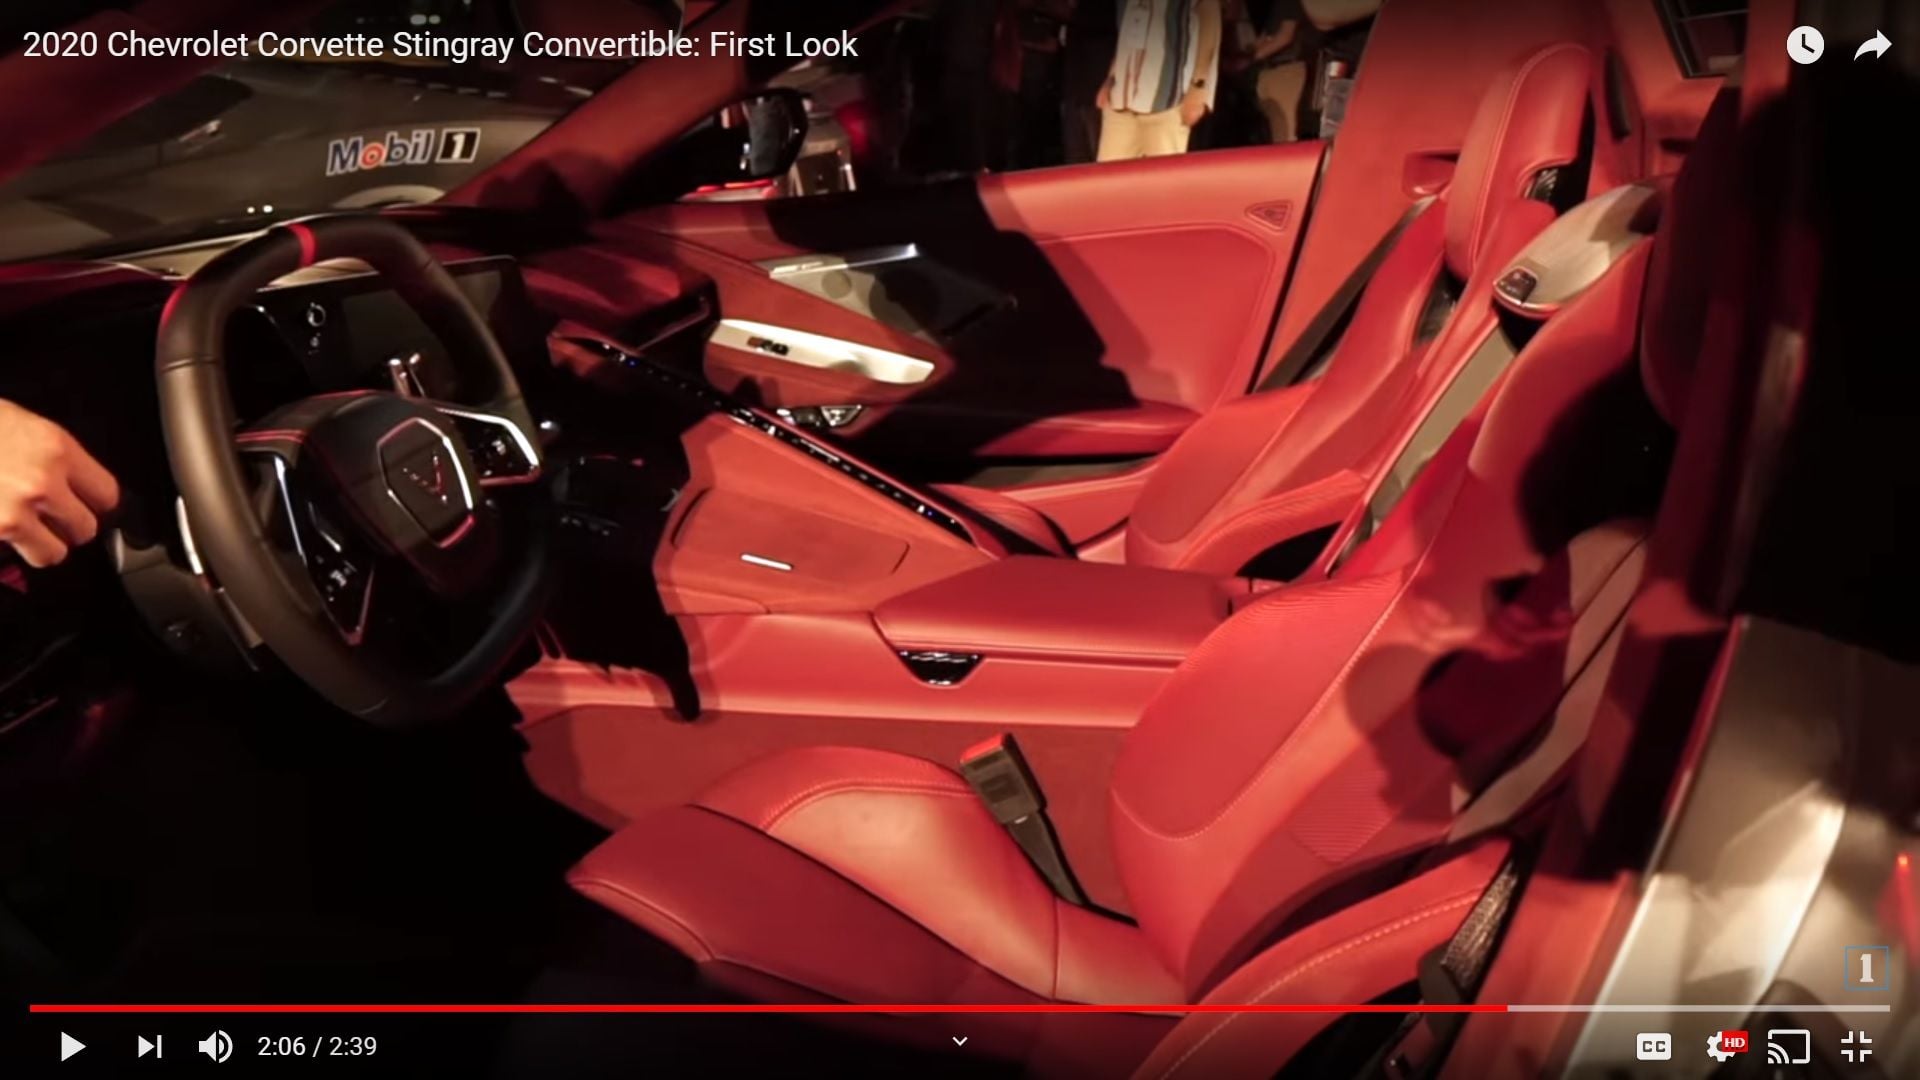 Morello Red In An Actual 2020 Corvette Pics Video